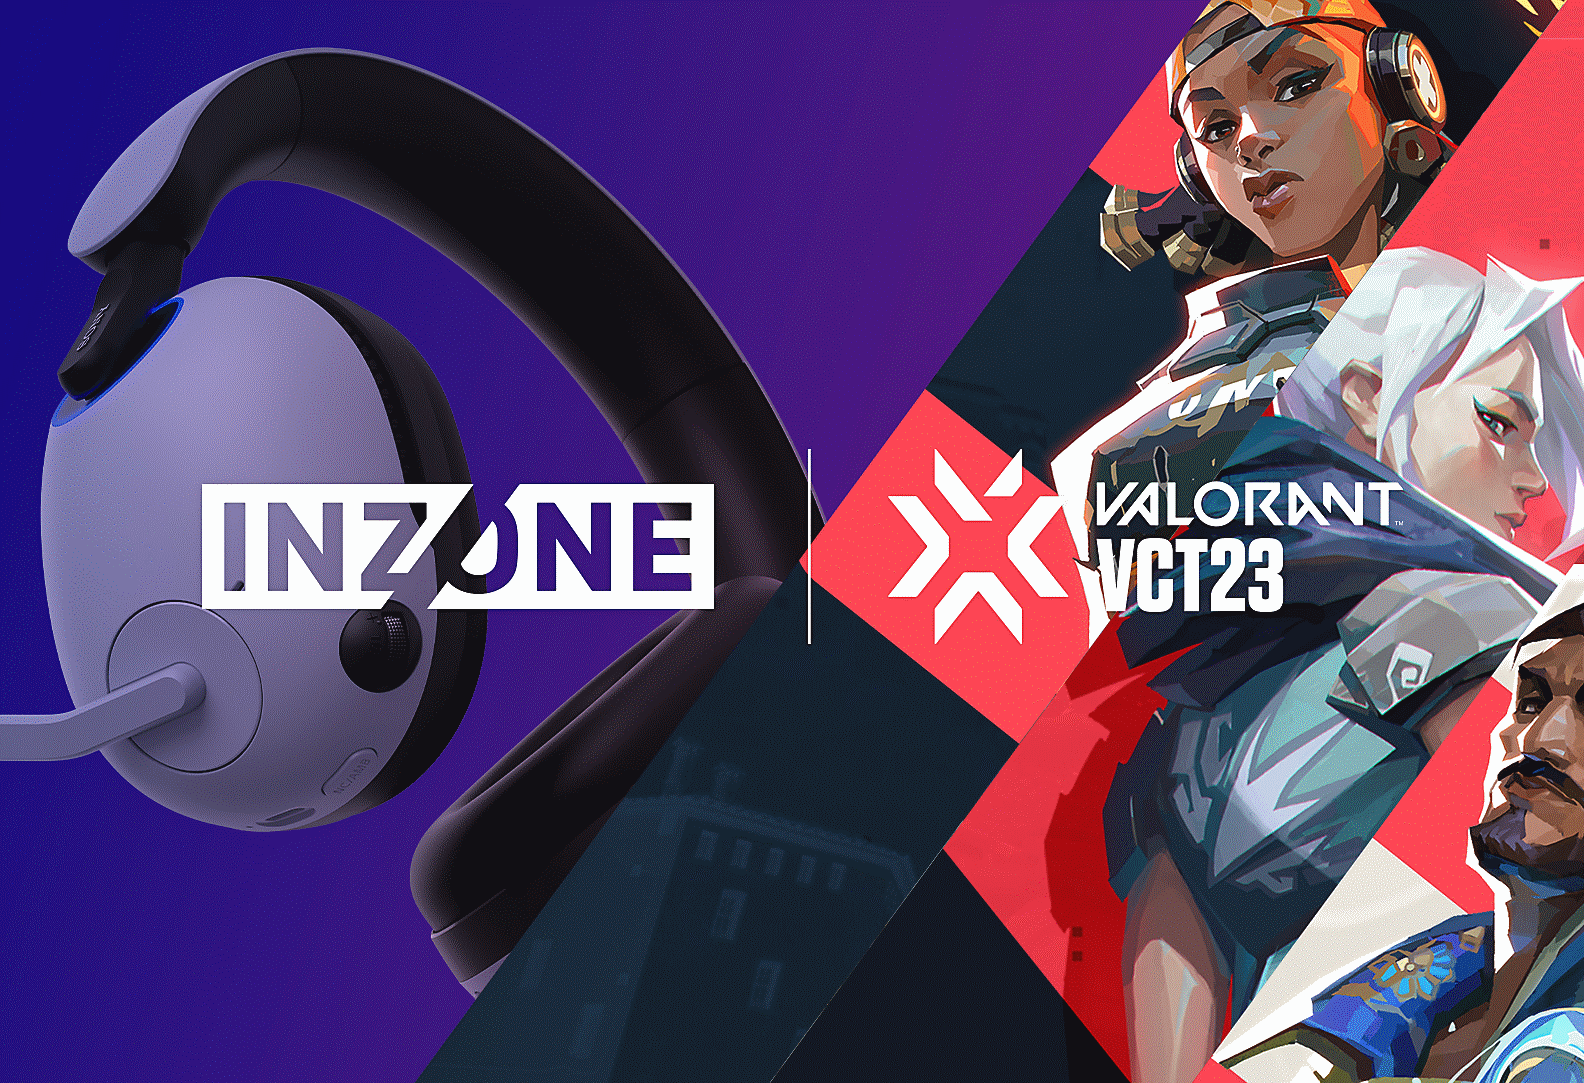 Εικόνα των ακουστικών κεφαλής για παιχνίδια INZONE H9 της Sony με χαρακτήρες από το VALORANT και λογότυπα INZONE και VALORANT VCT23